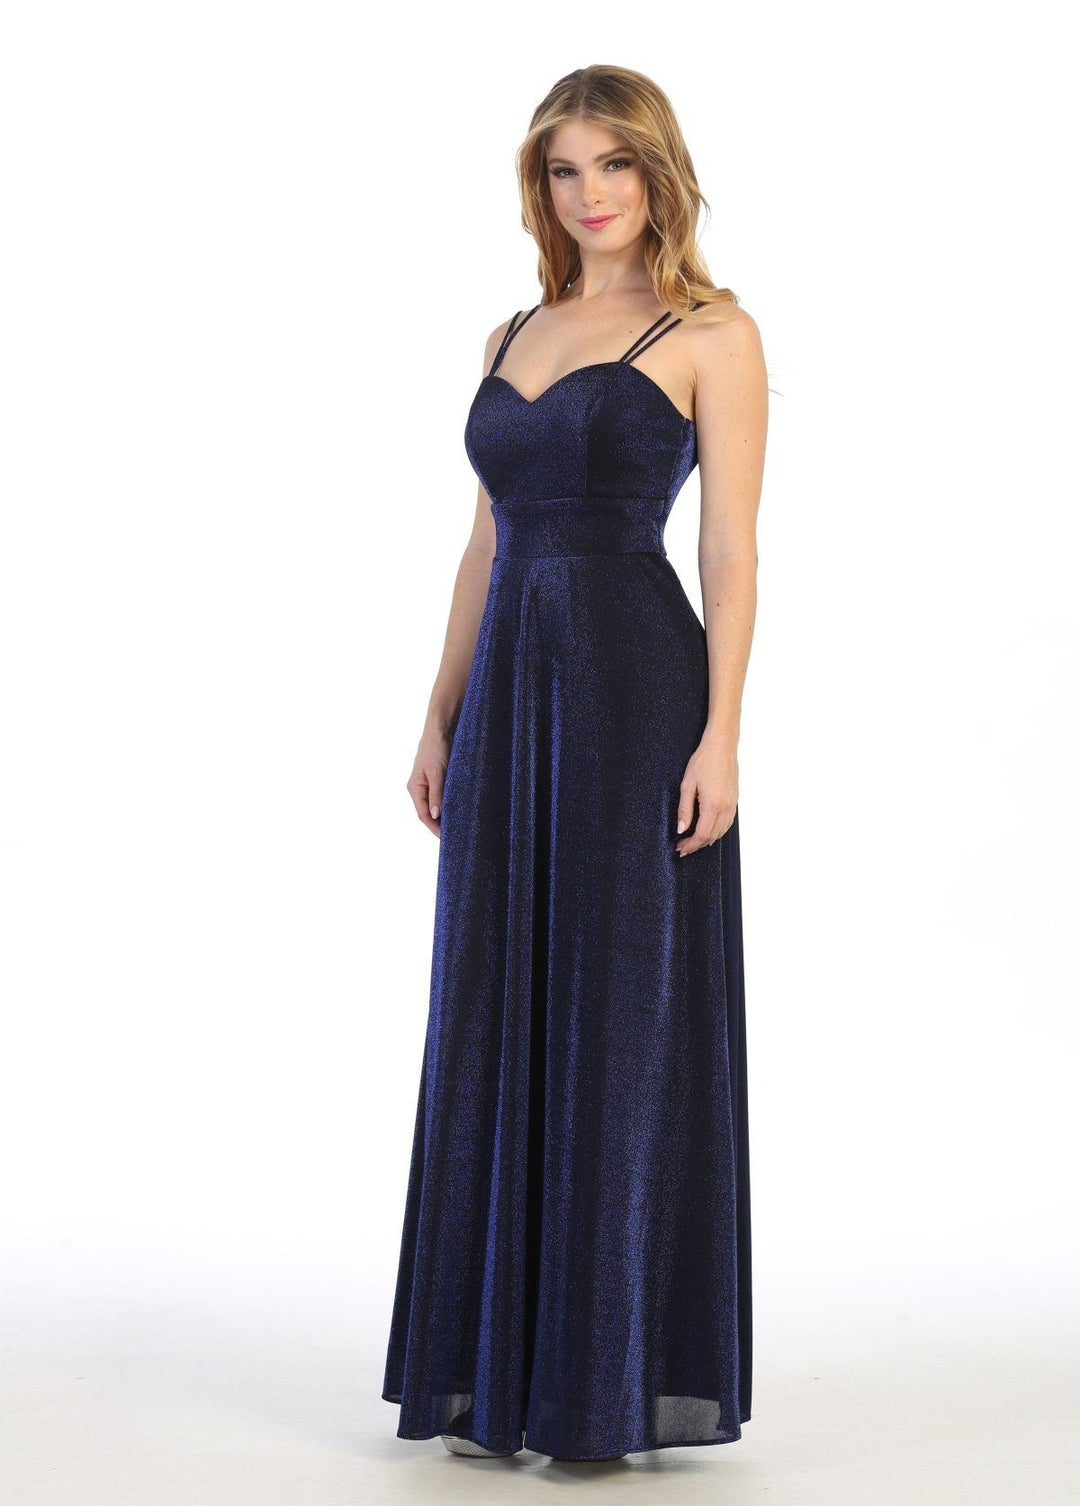 Long A-line Sweetheart Metallic Dress by Celavie 6505L